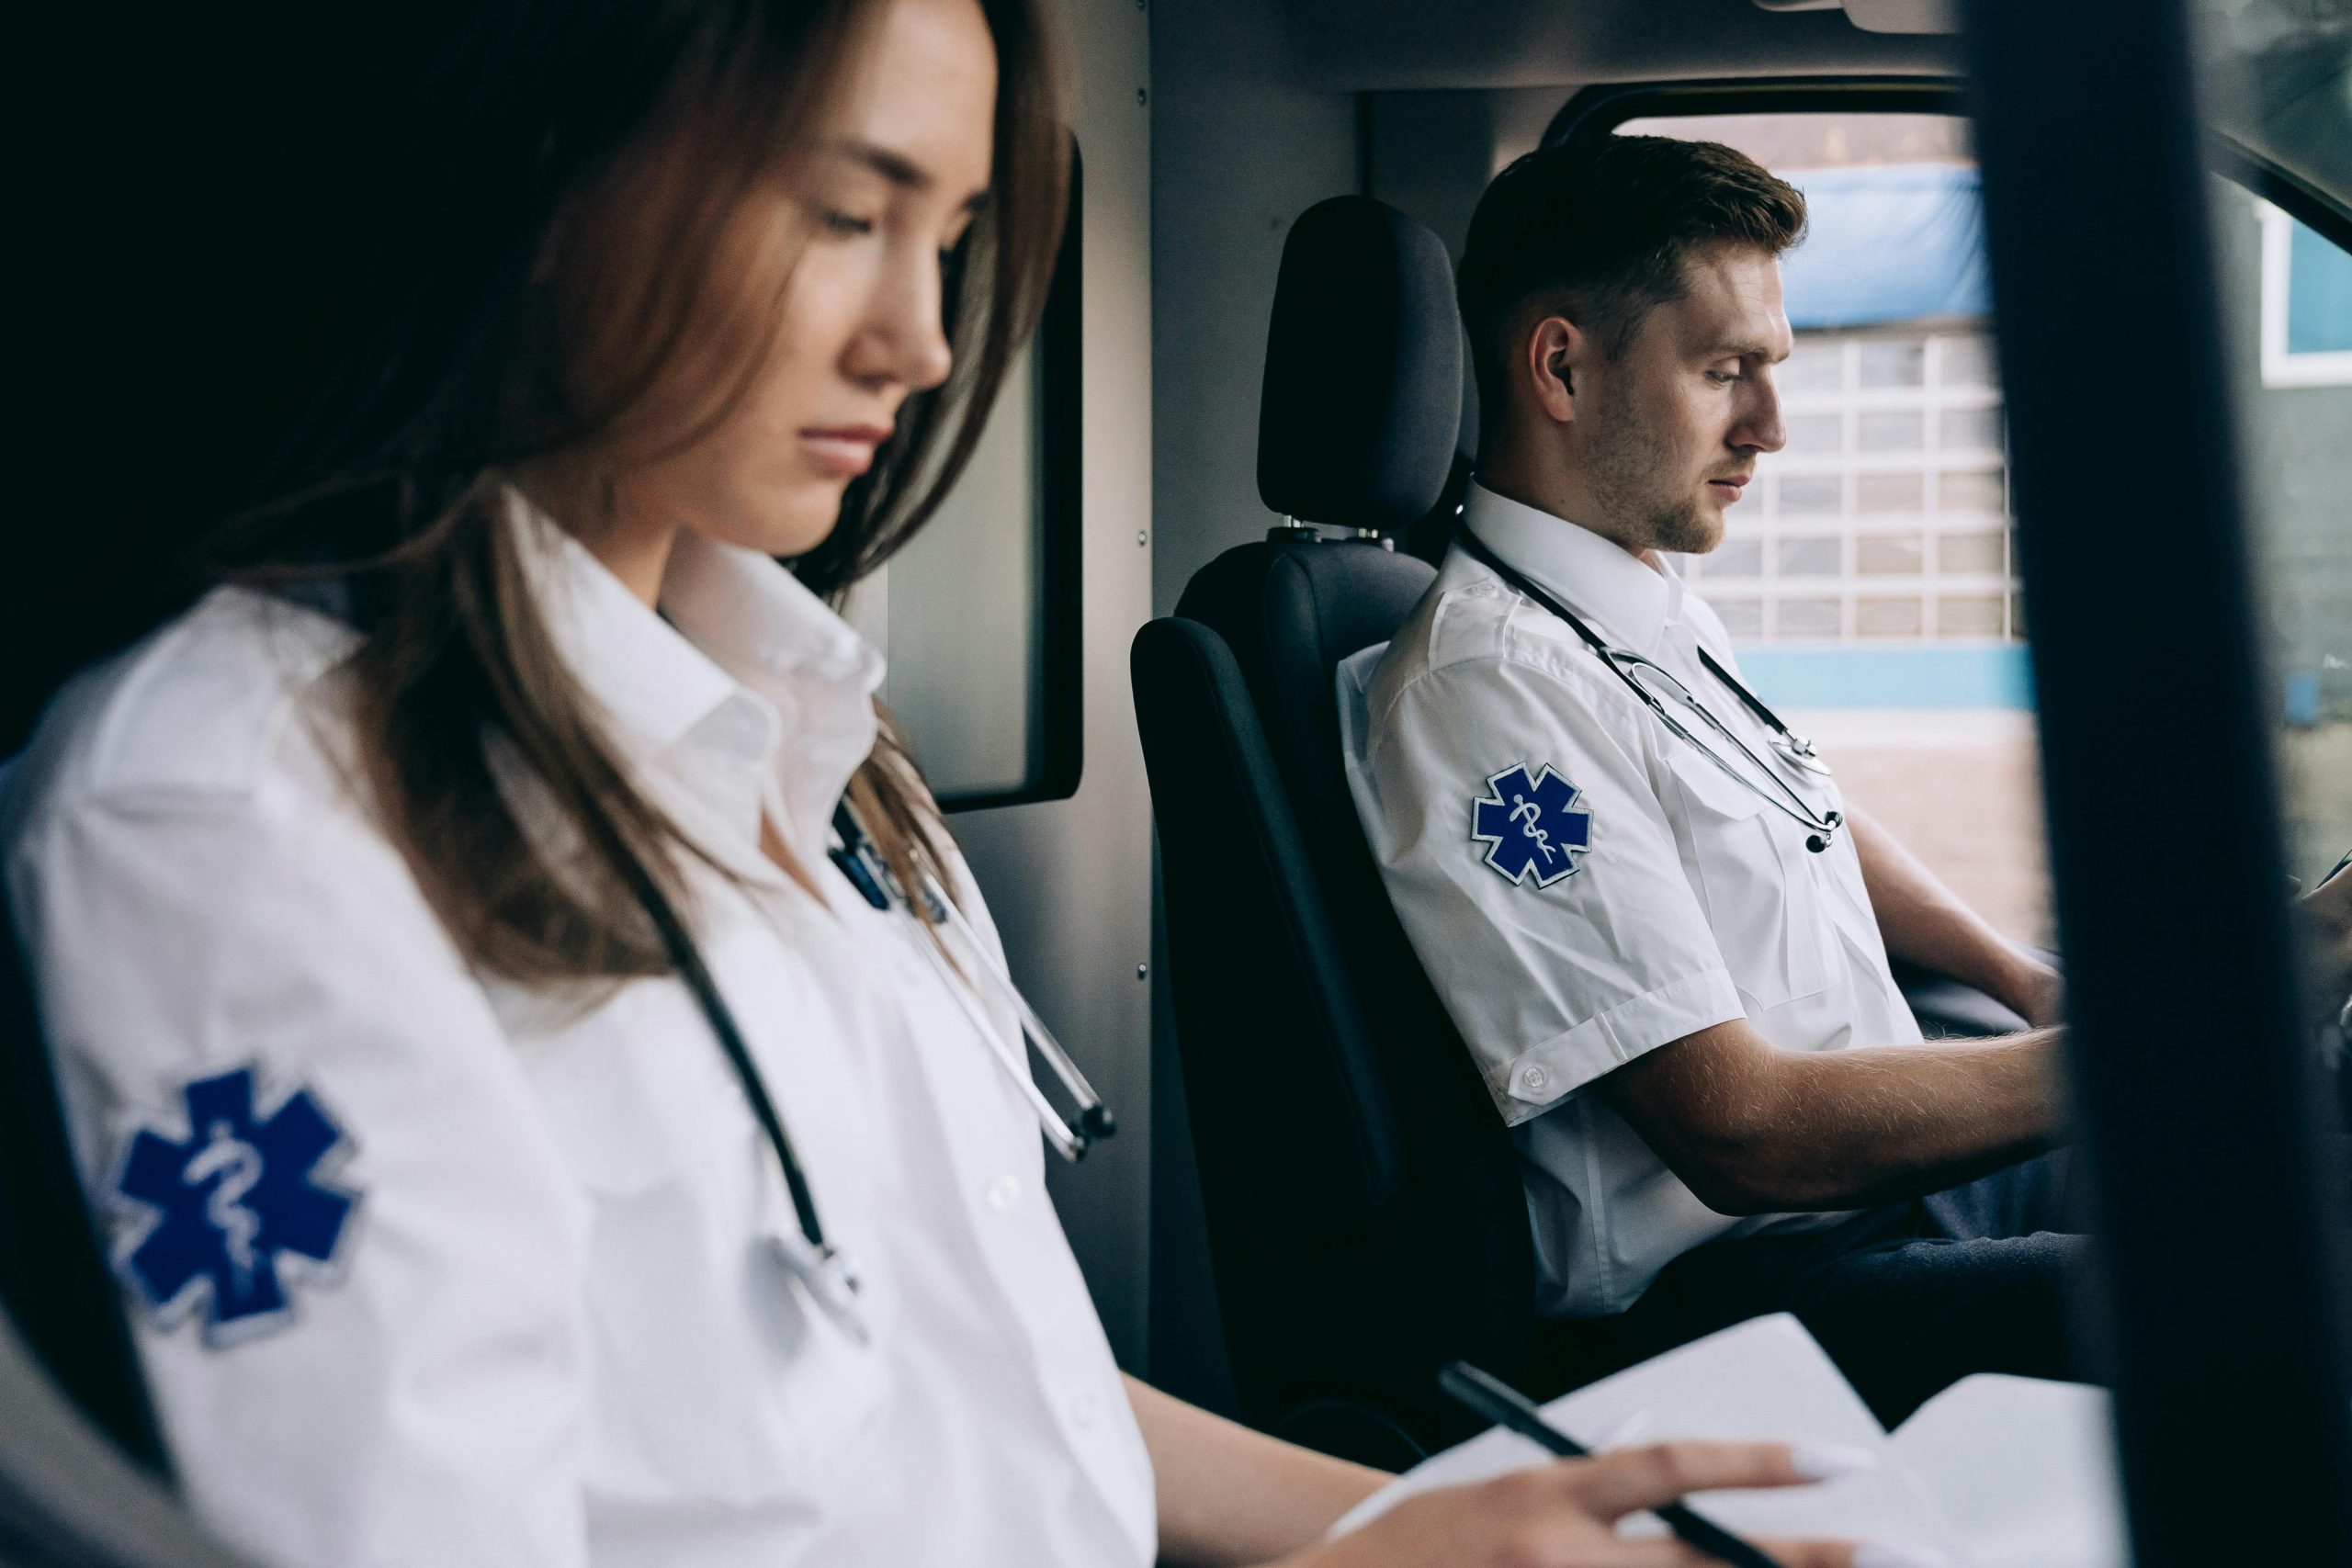 Ratownicy medyczni siedzący z przodu karetki noszący odzież mundurowa